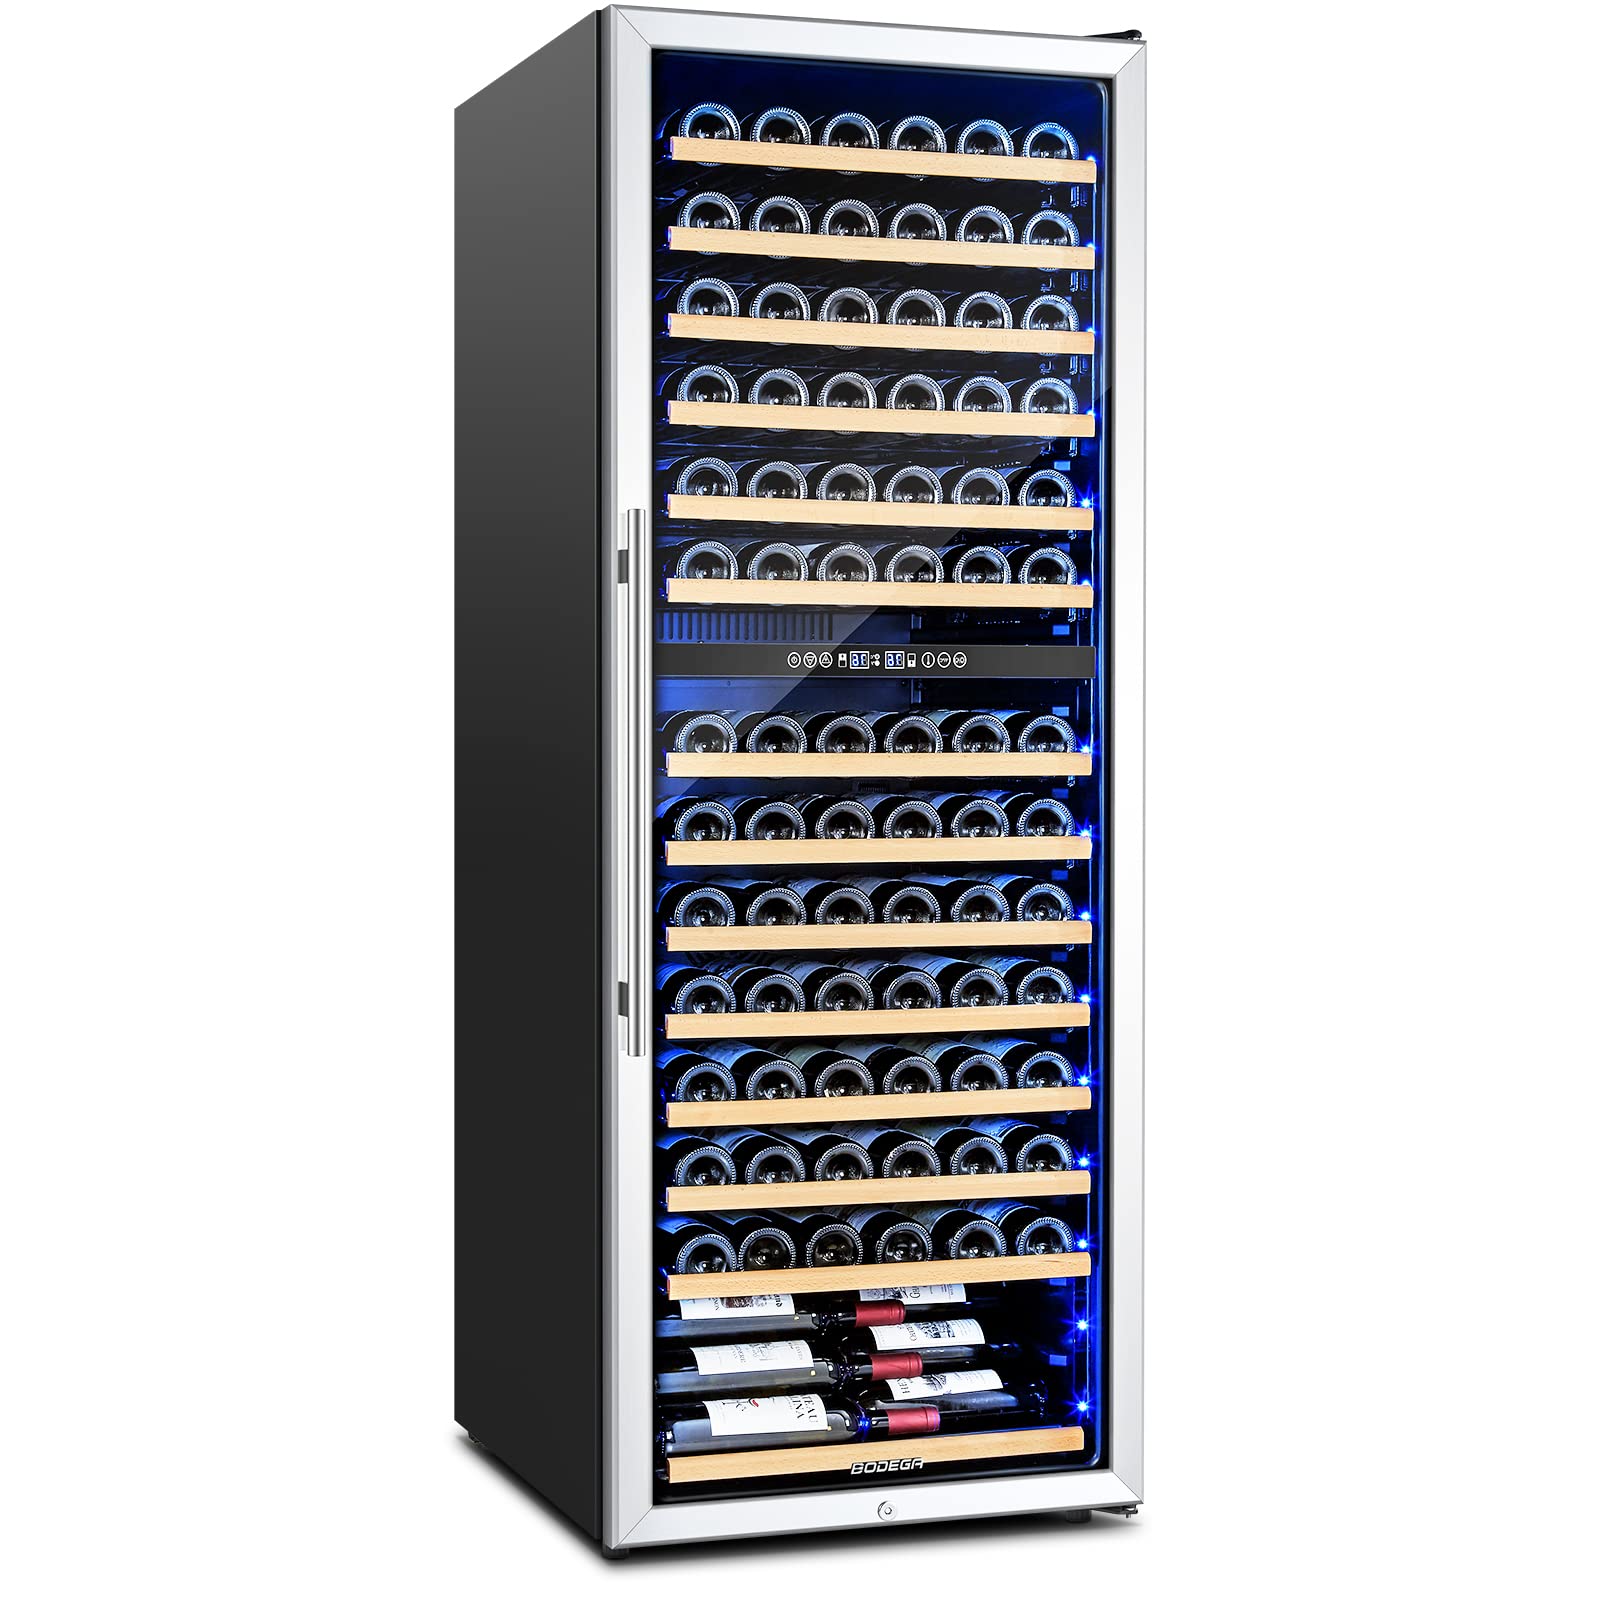 Image of Bodega Wine Cooler Refrigerator for154 Bottles